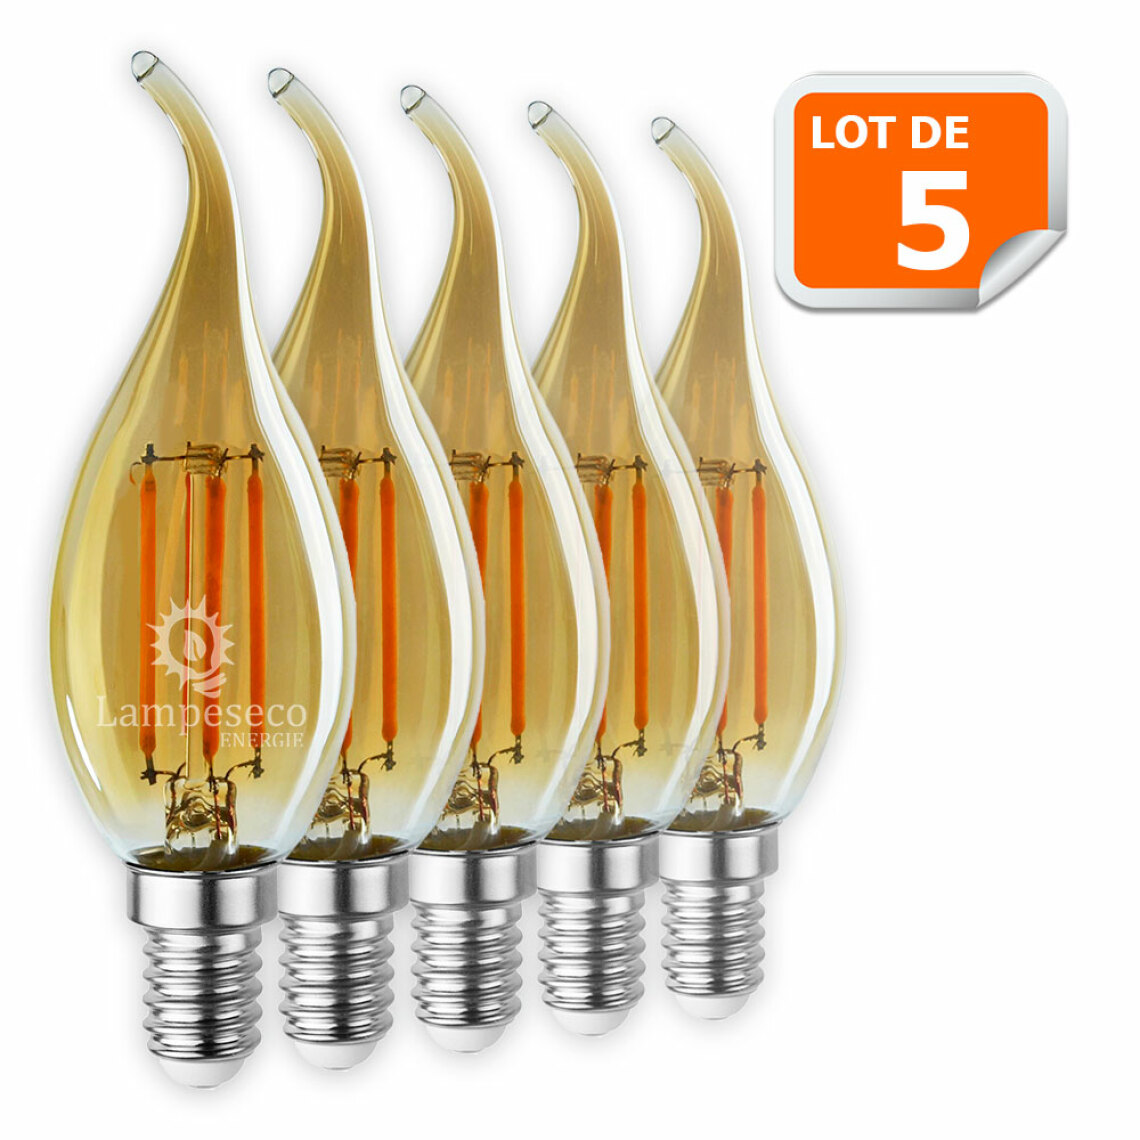 Lampesecoenergie - Lot de 5 Ampoules décorative led à filament Doré 4 watt (éq. 42 Watt) Culot E14 - Ampoules LED